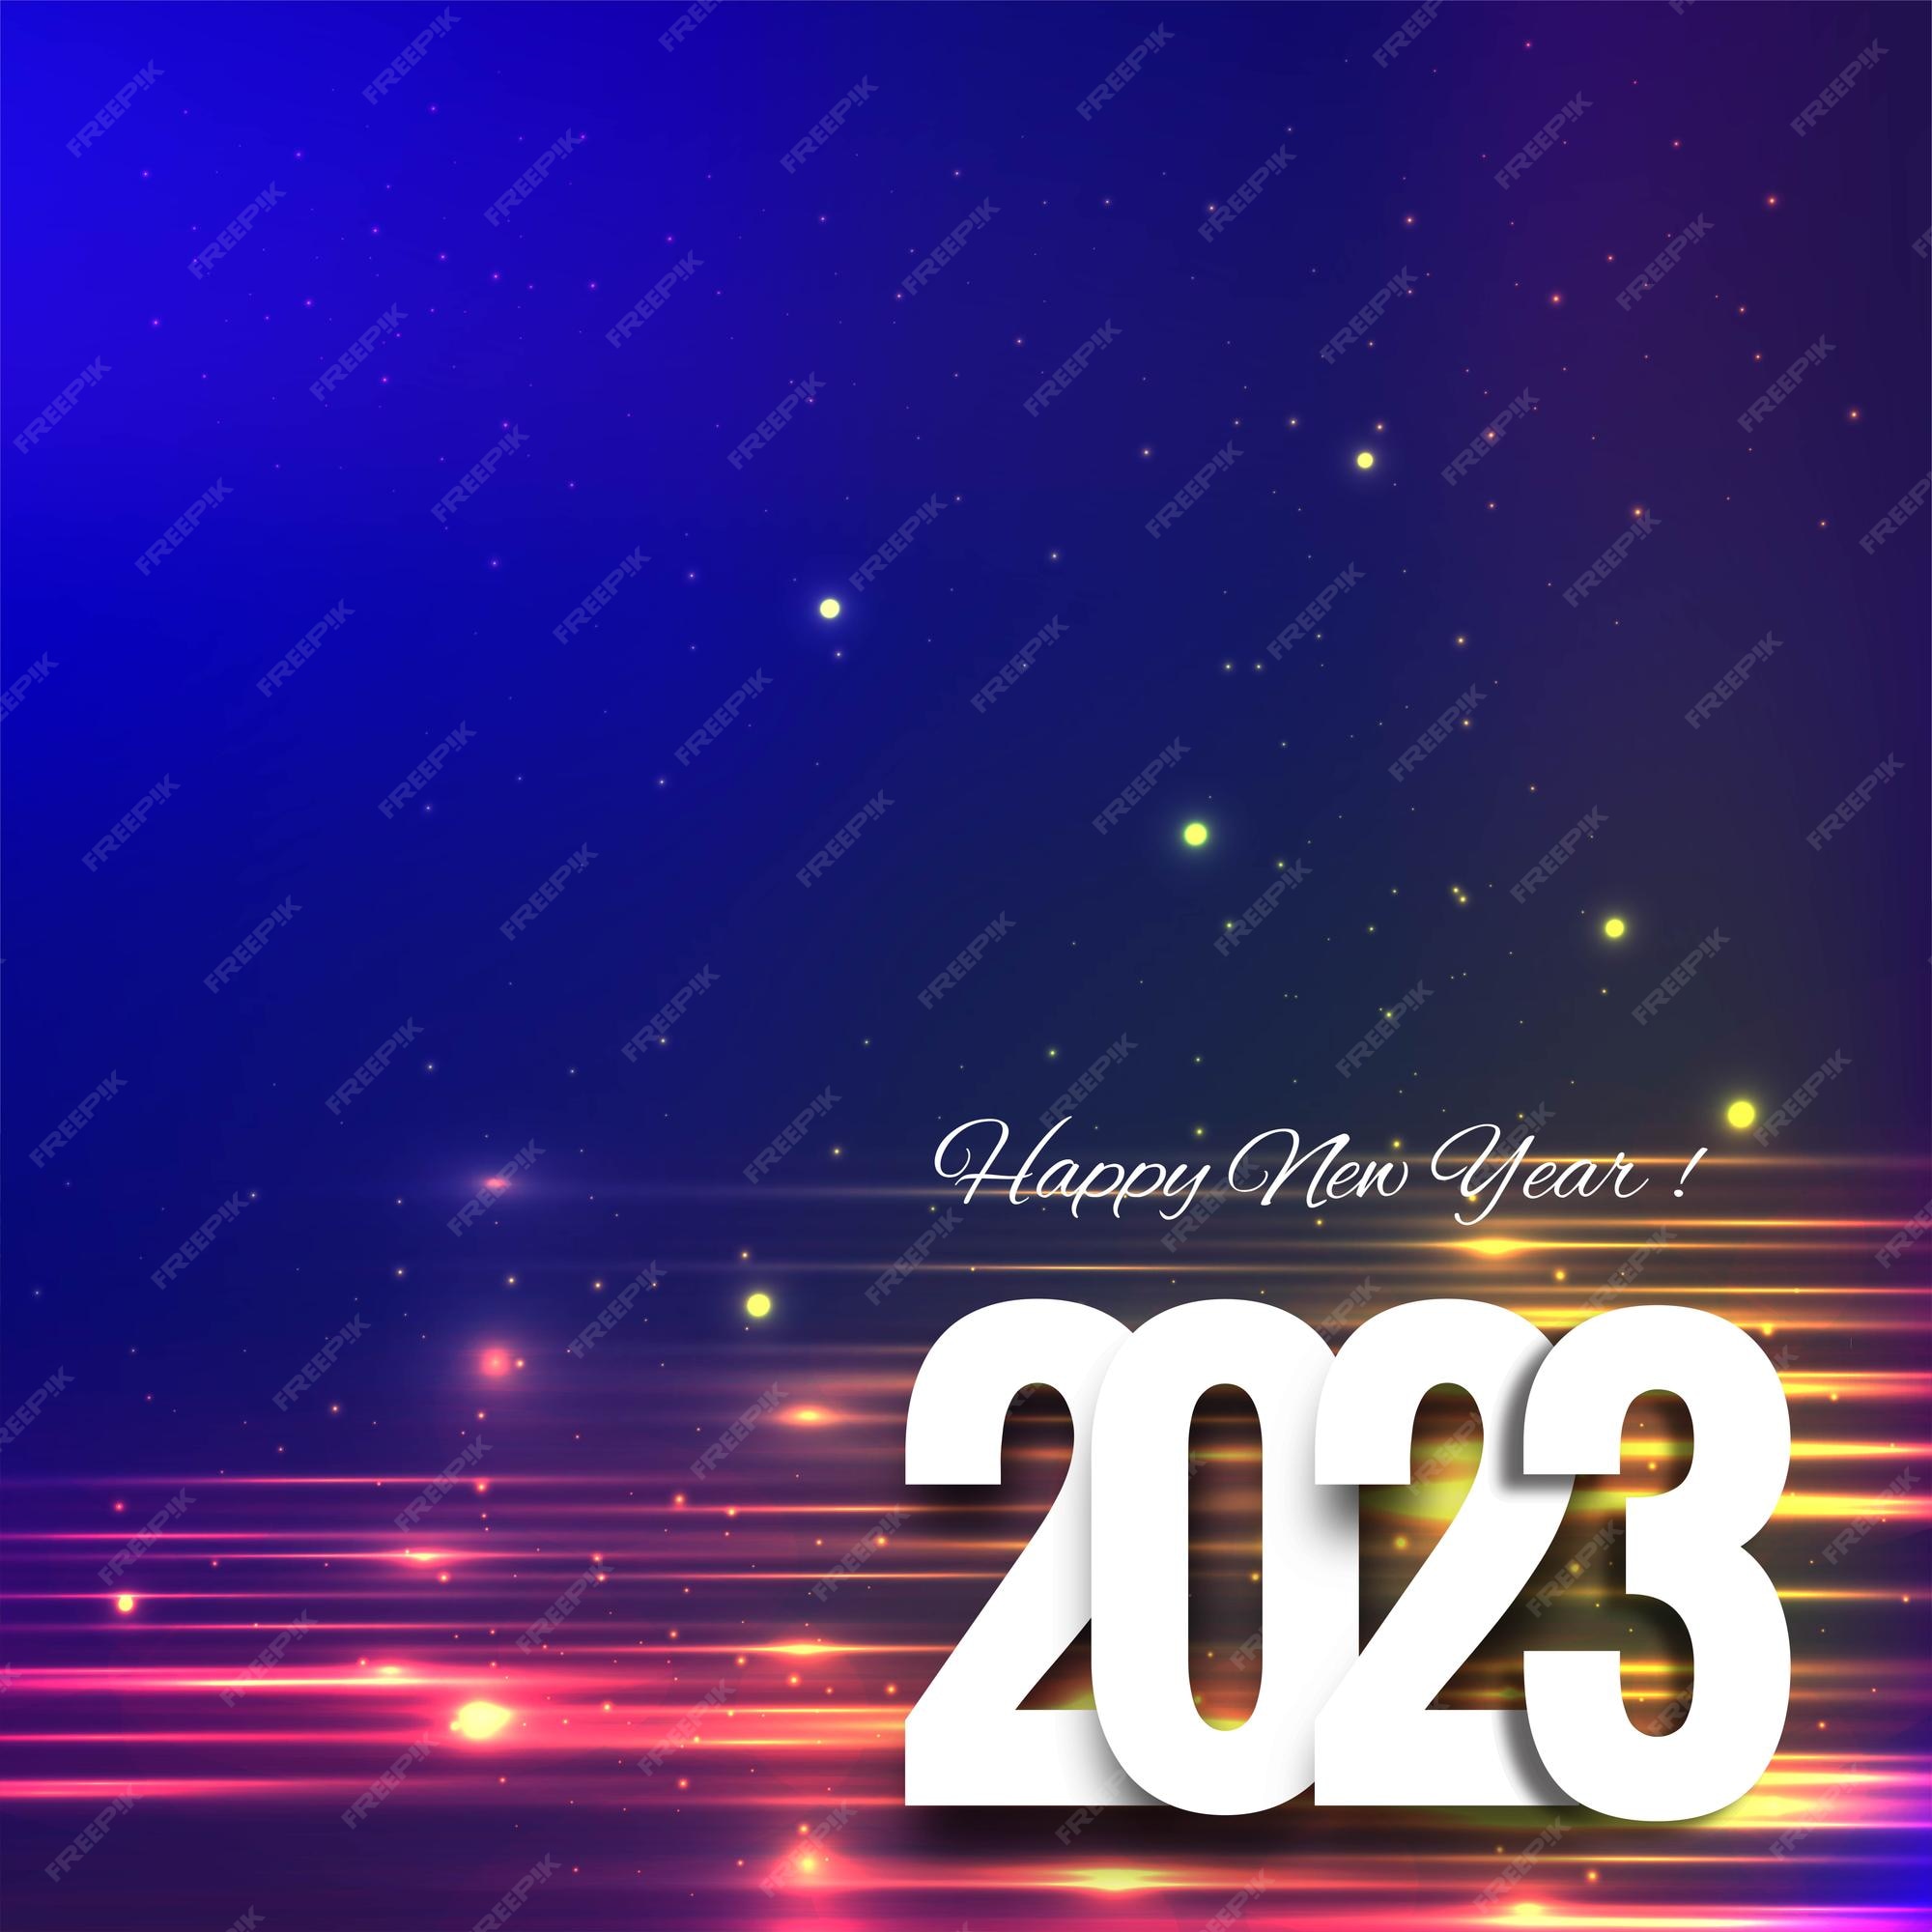 Tổng hợp 2021 Background New Year Lộc tài, may mắn đón xuân sang